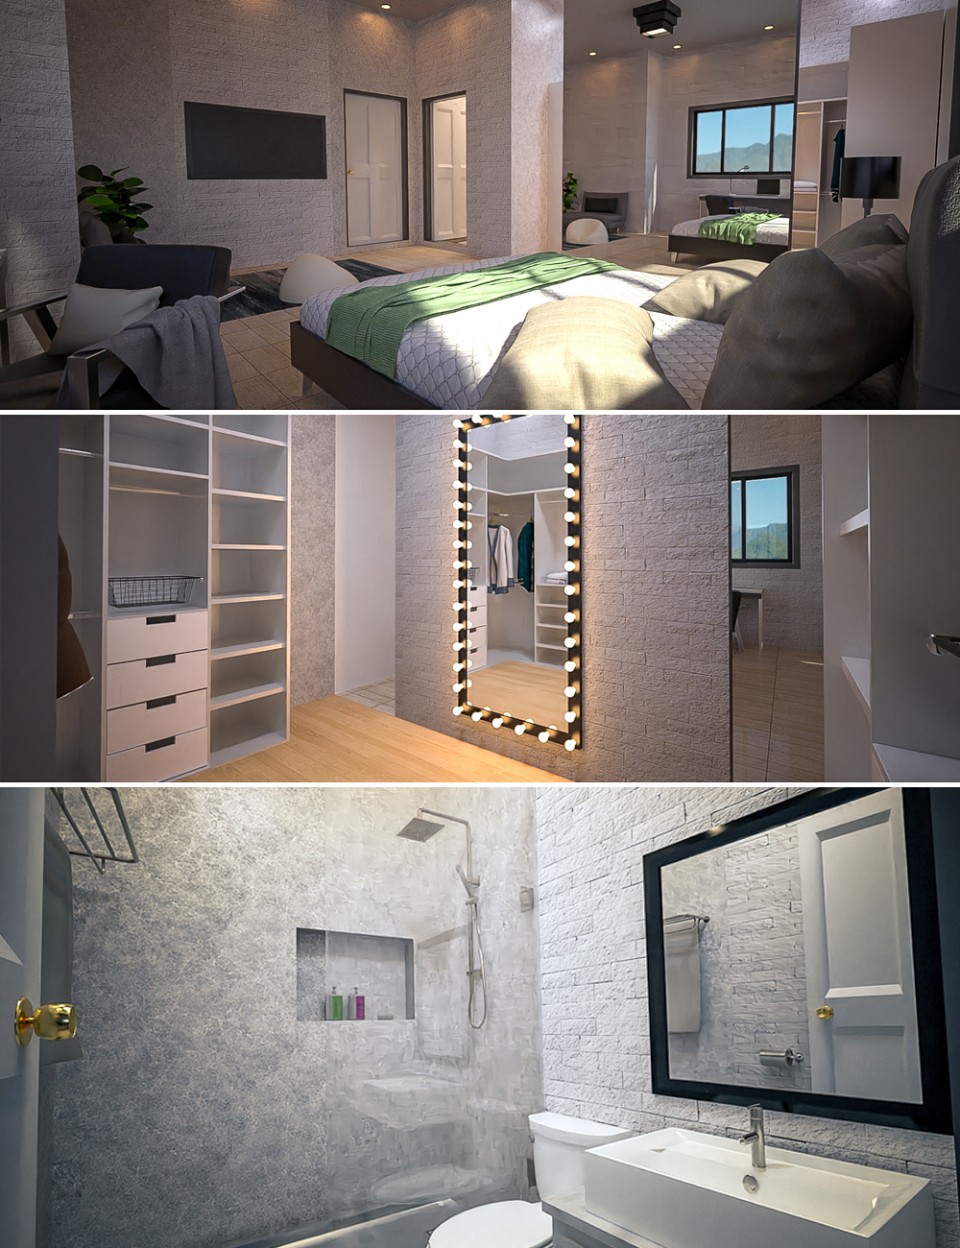 The Master Bedroom_DAZ3DDL